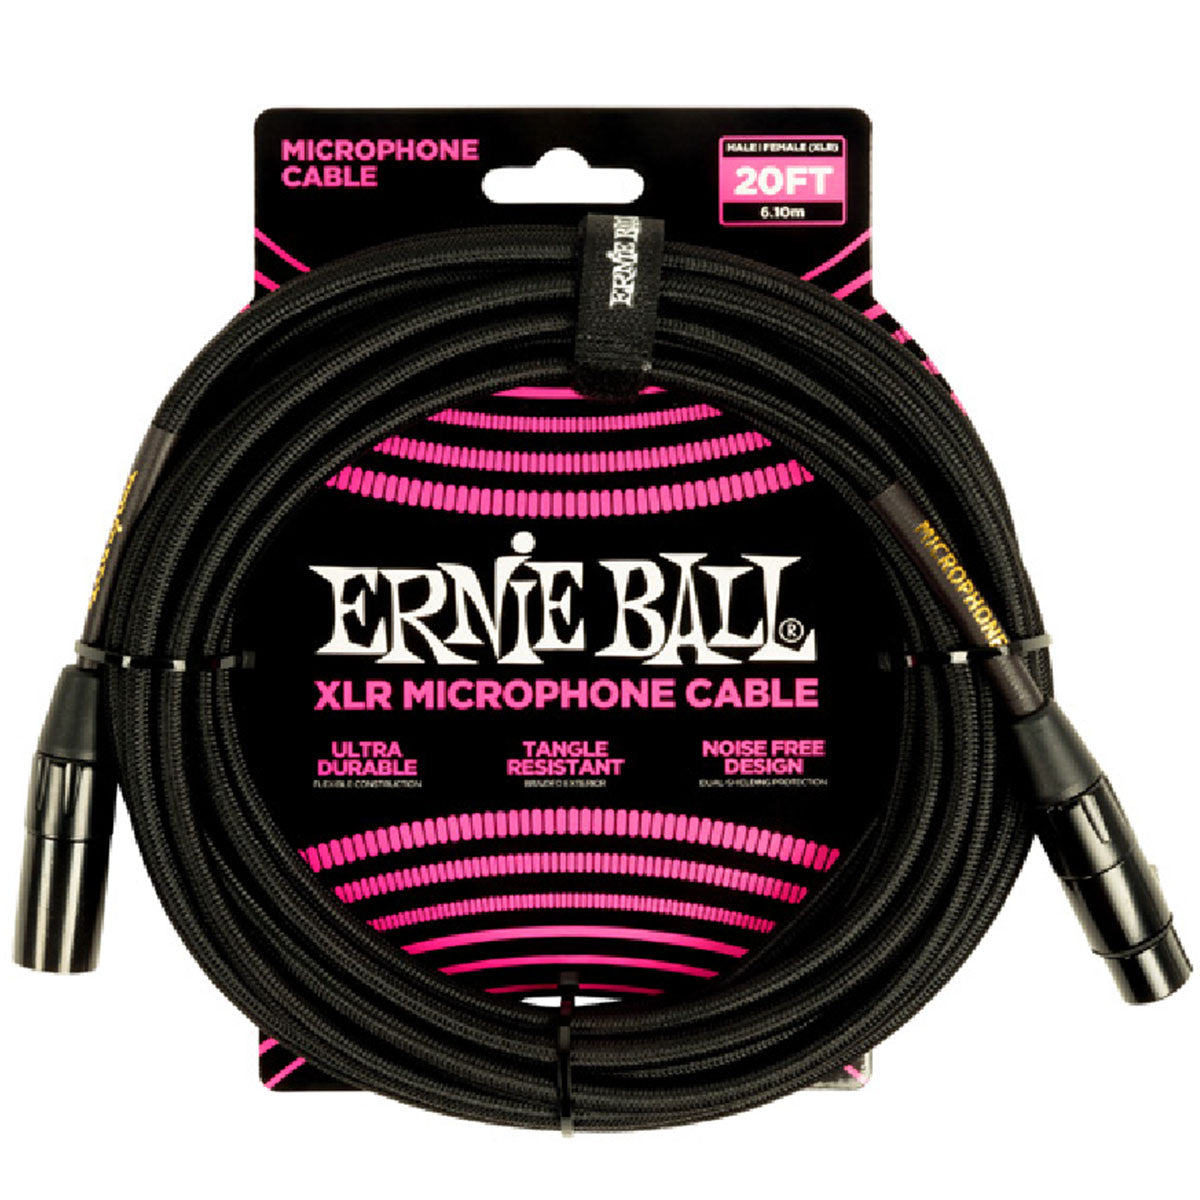 Ernie Ball 6392 Microphone Cable 20ft Black Braided XLR Mic Lead